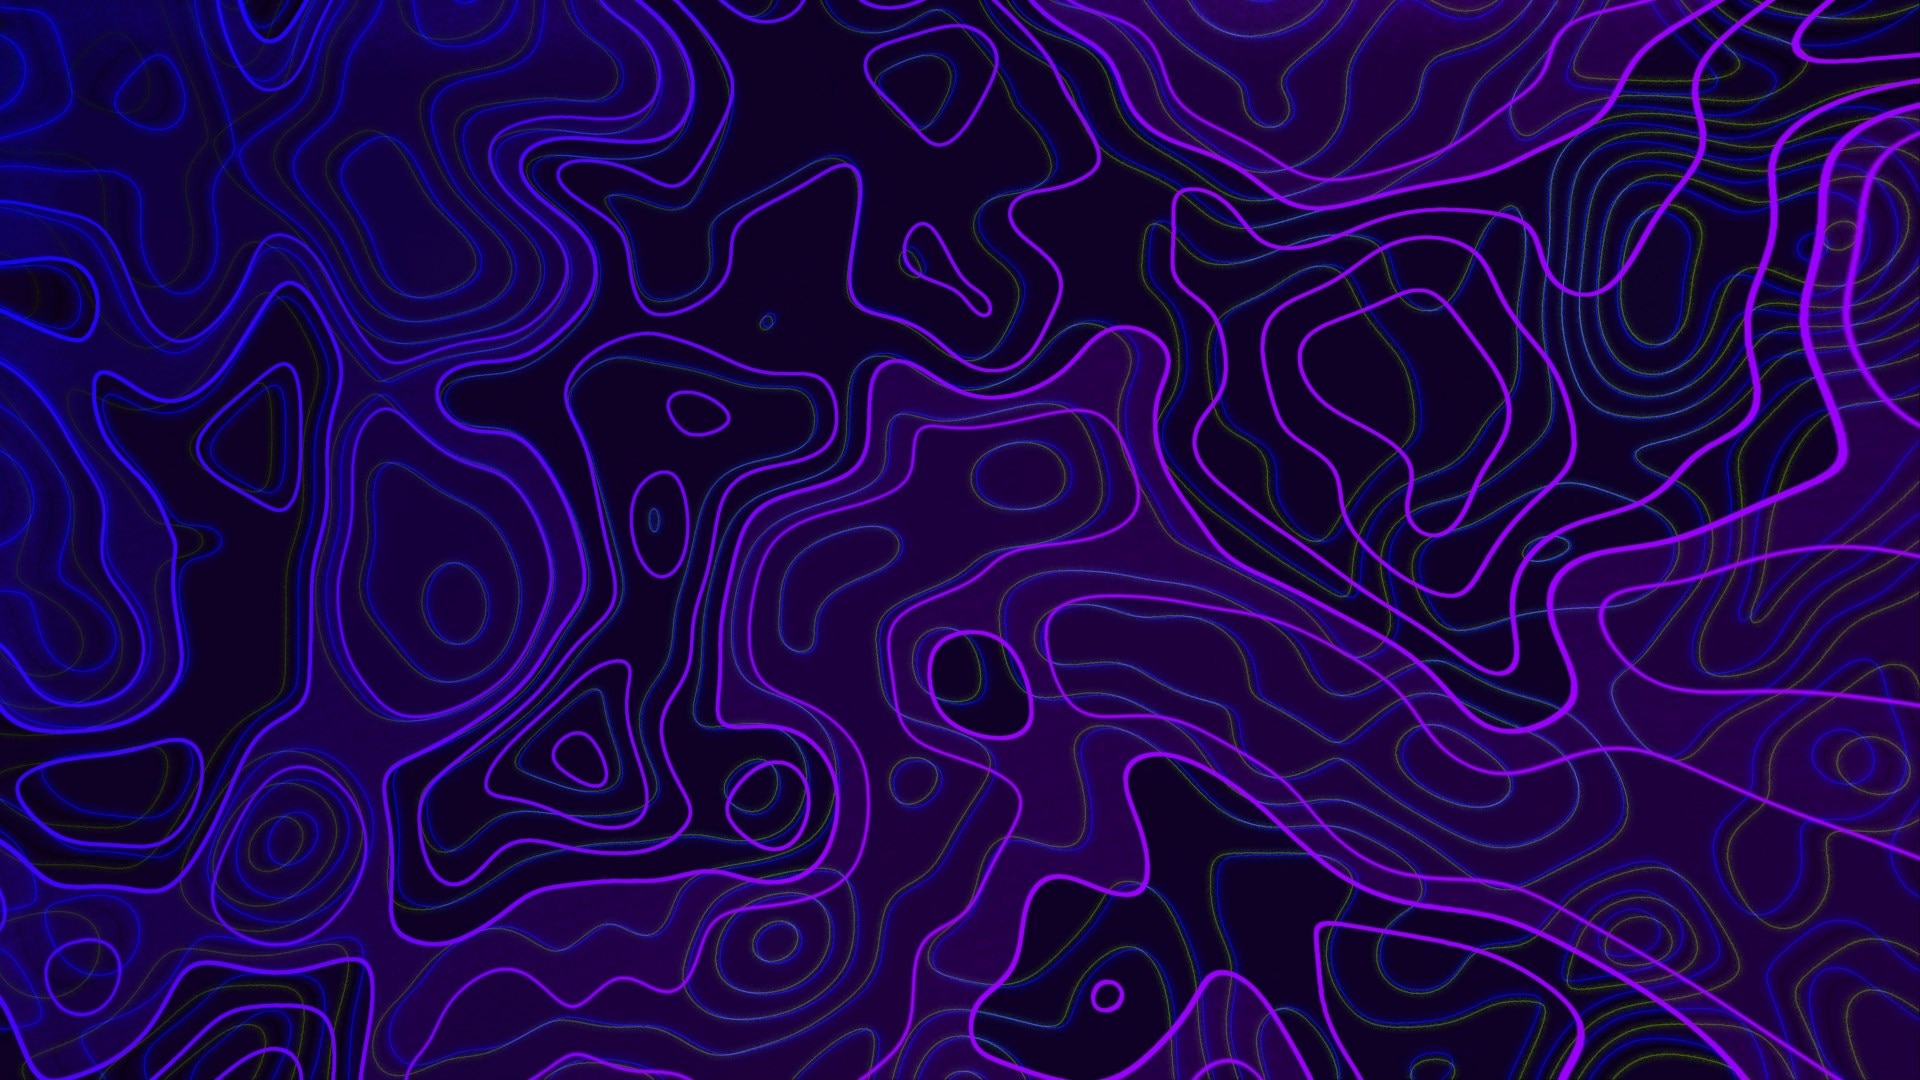 Abstract Purple Background: Chiêm ngưỡng vẻ đẹp kỳ lạ, huyền bí và cuốn hút của những hình ảnh nền mang phong cách trừu tượng với những tông màu chủ đạo là tím. Những hình nền này thật sự là một tác phẩm nghệ thuật độc đáo, mang lại cho bạn sự mới mẻ và thú vị cho màn hình điện thoại hoặc máy tính của bạn.